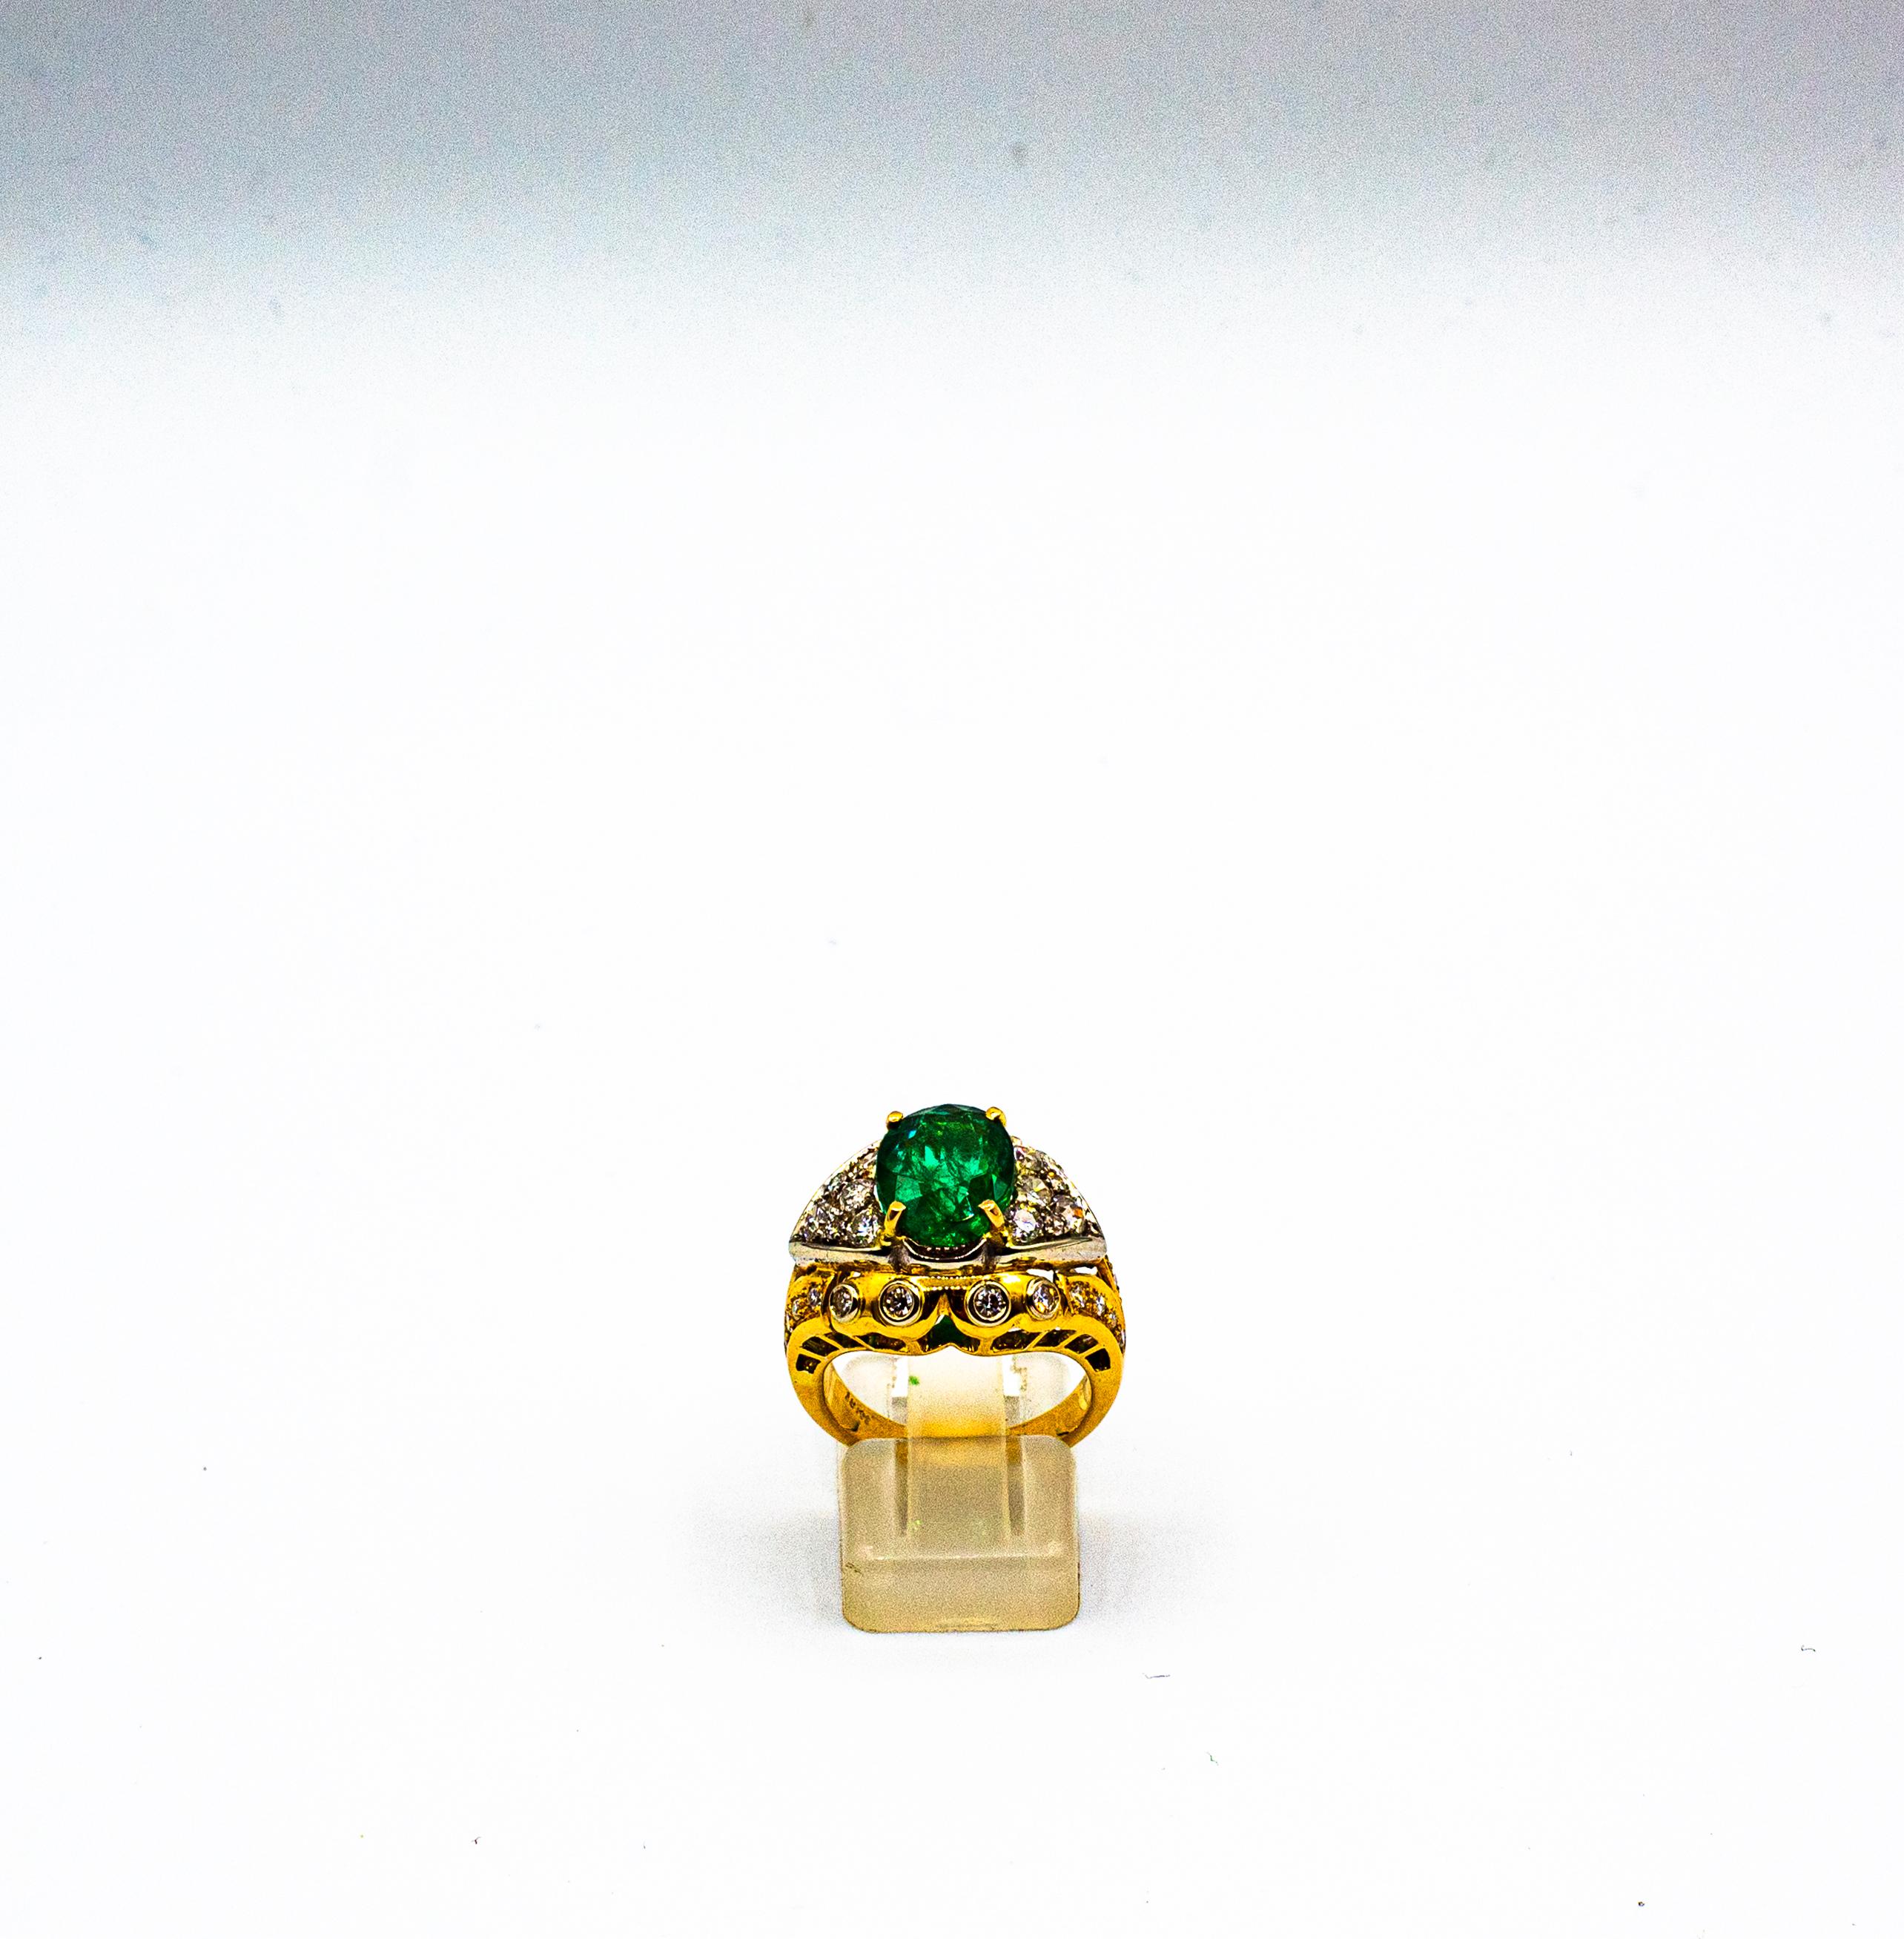 Dieser Ring ist aus 18K Gelbgold Weißgold gefertigt.
Dieser Ring hat 1.50 Karat weiße moderne Diamanten im Rundschliff. Farbe: H-G Klarheit: VVS1
Dieser Ring hat eine 3.70 Karat natürlichen Sambia Oval Cut Smaragd.
Dieser Ring ist vom Art Deco